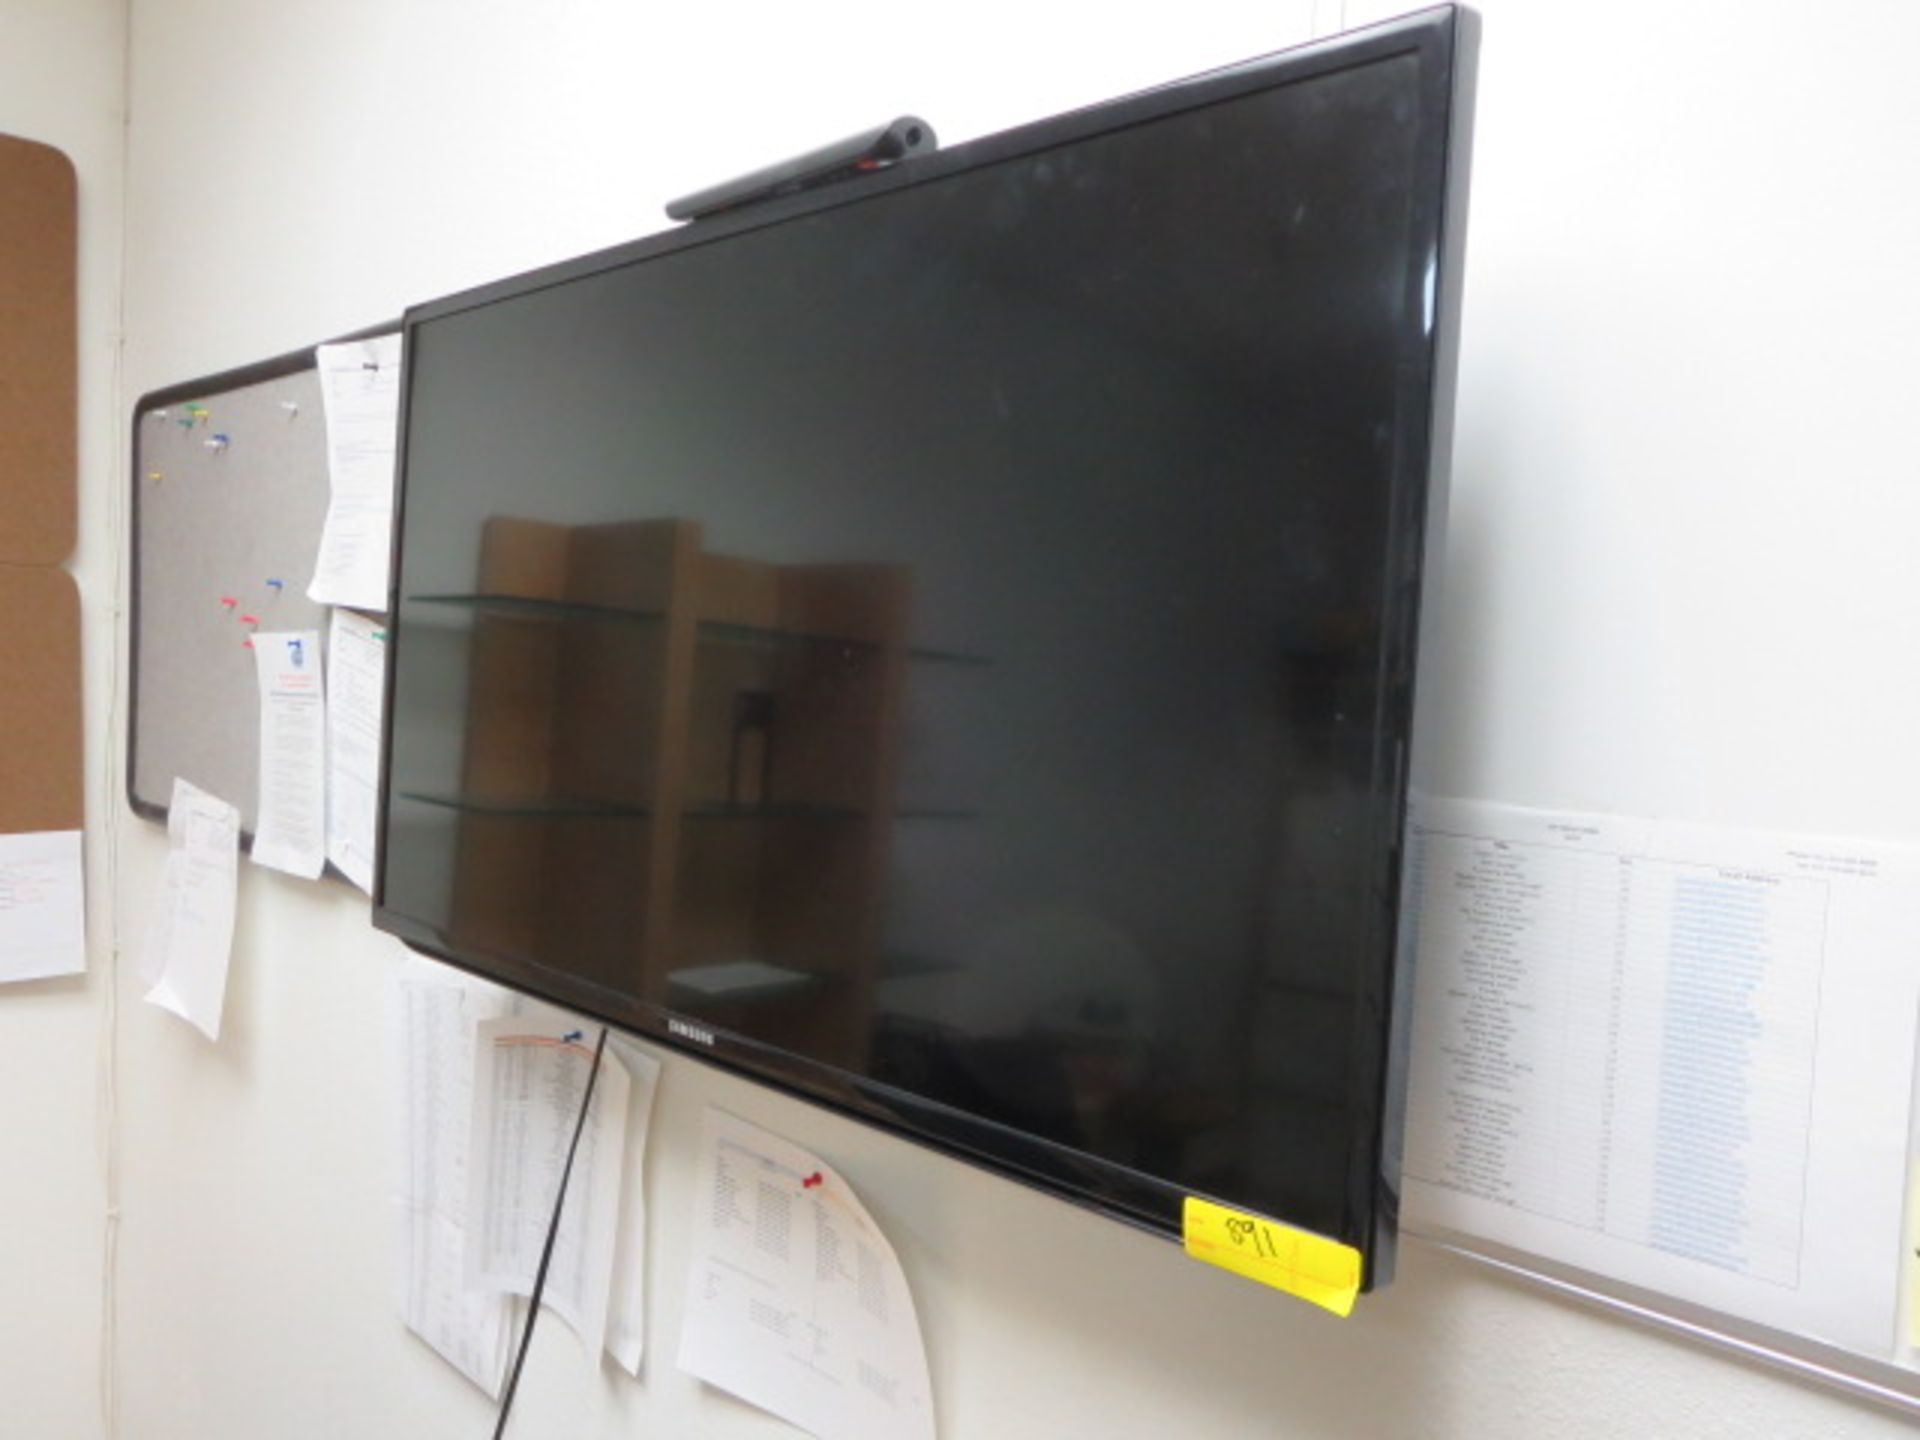 40in. Samsung LCD TV, model UN40H5201AF